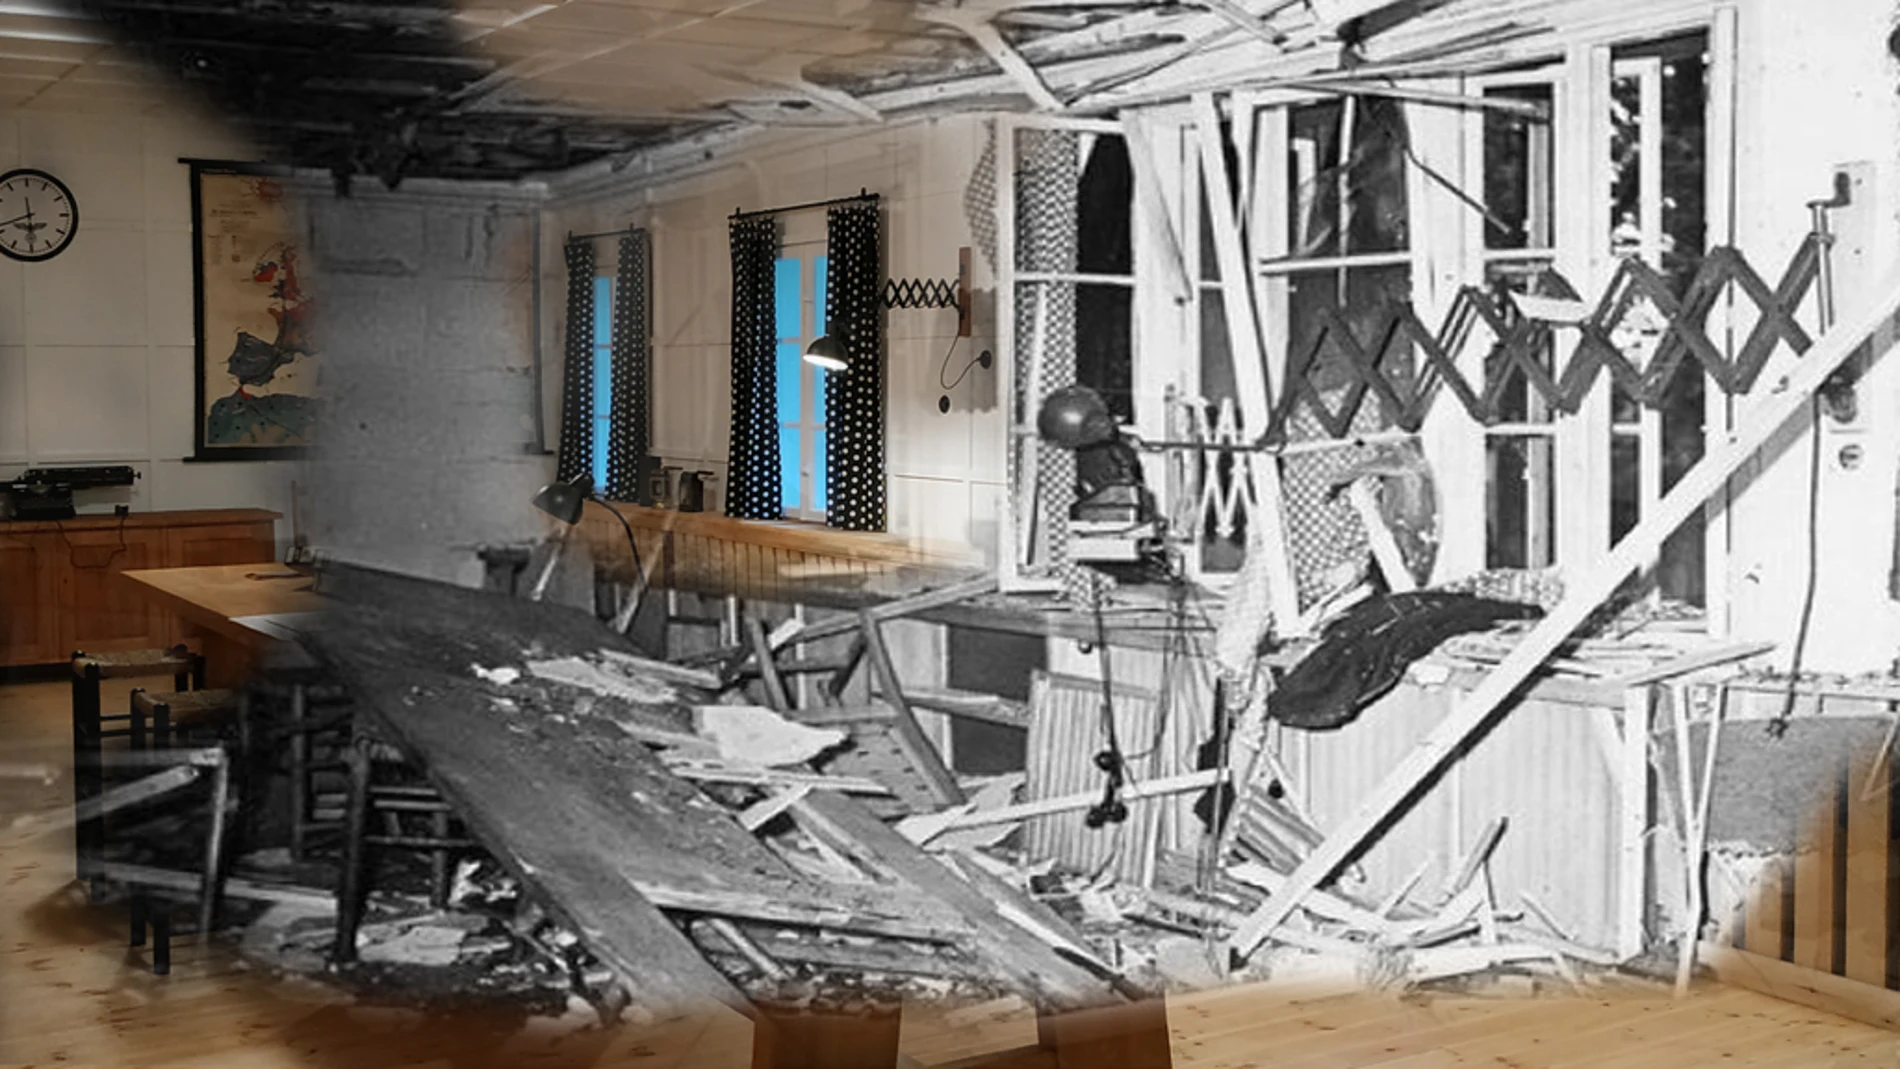 Reconstrucción con el antes y el después de la sala donde detonó lo bomba